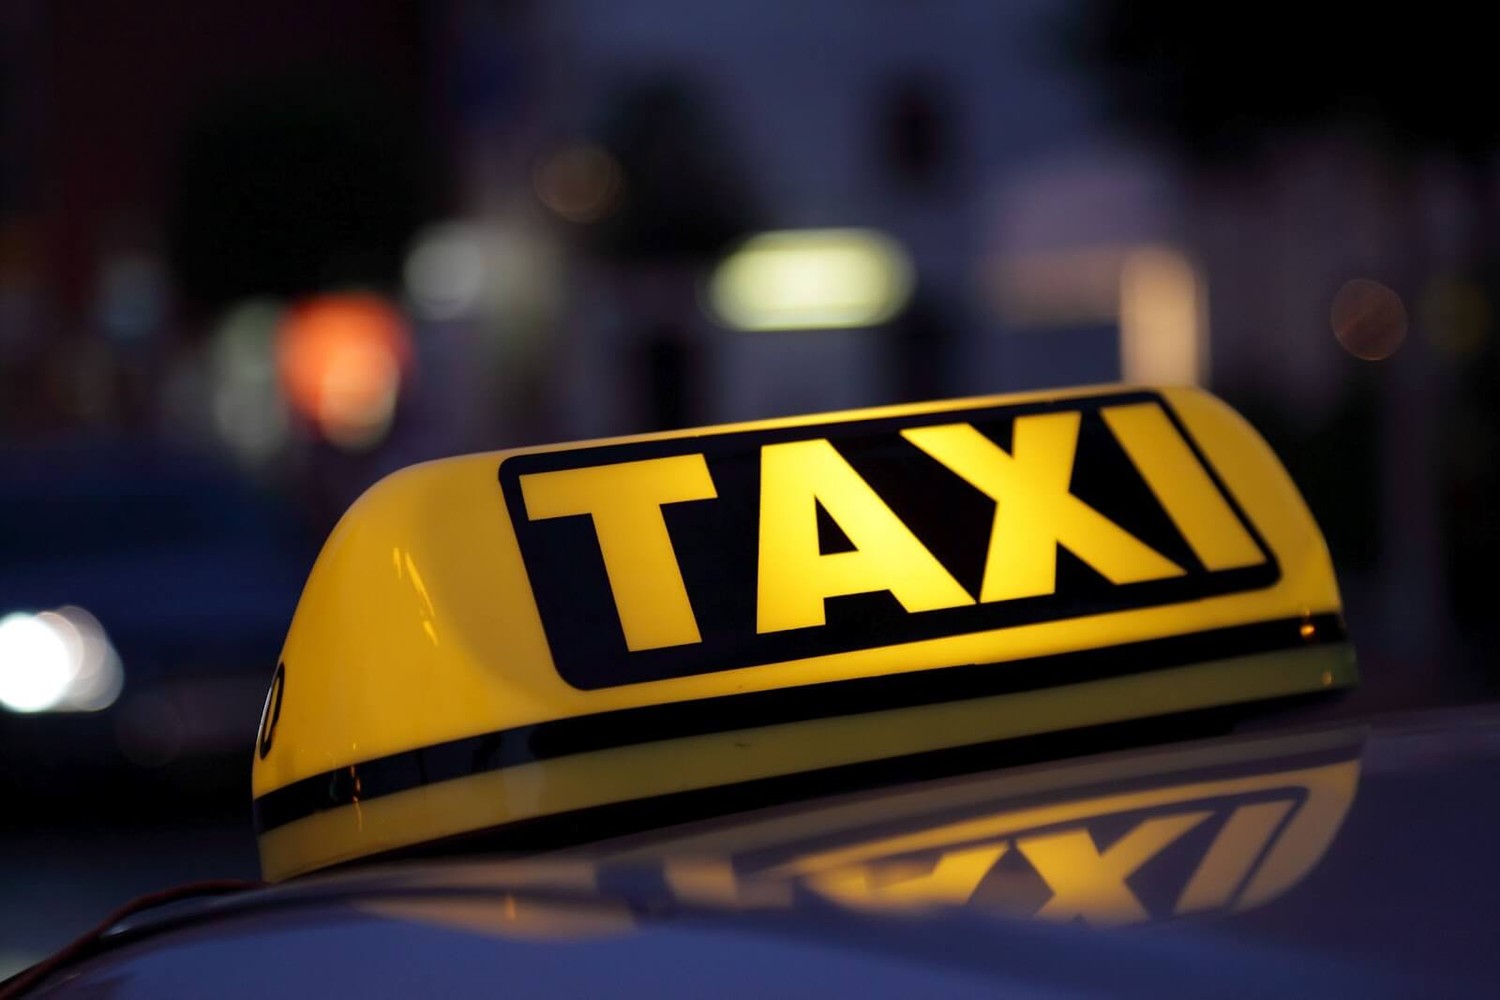 Служба такси Bolt в Мариуполе: начните зарабатывать уже сегодня